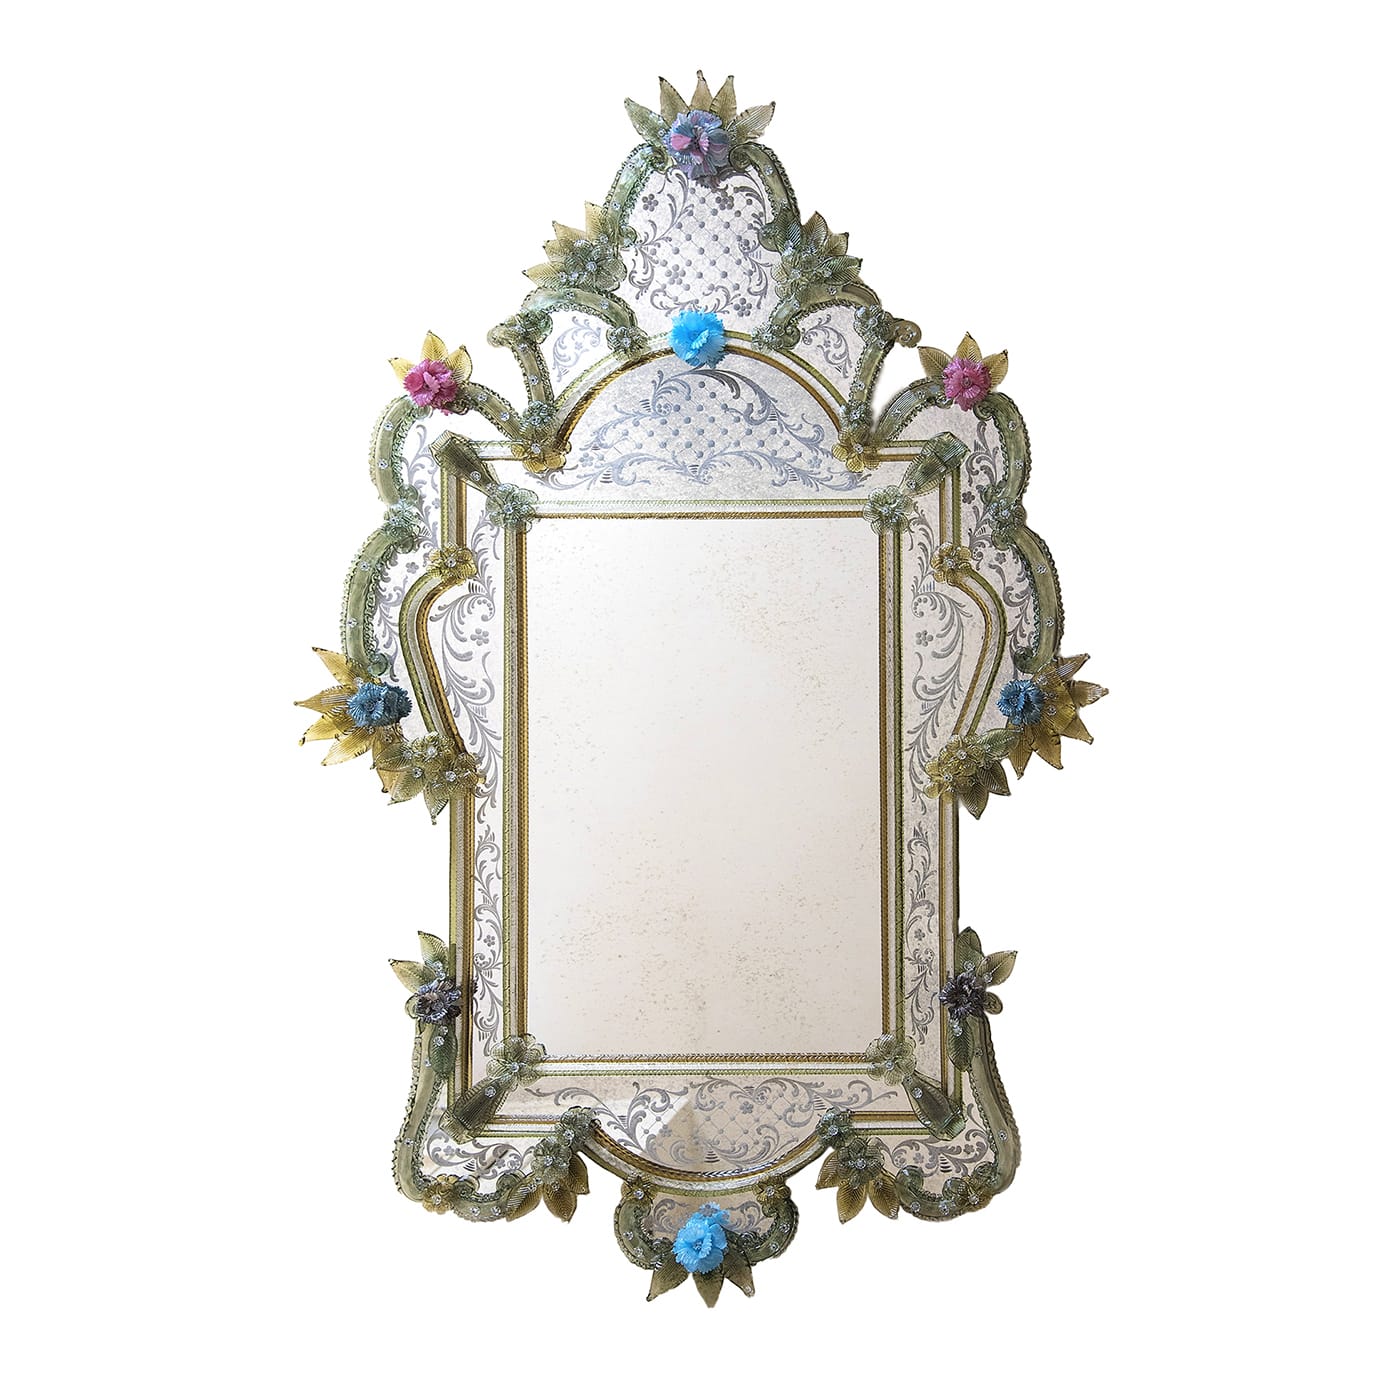 Dogal Wall Mirror - Specchi Veneziani